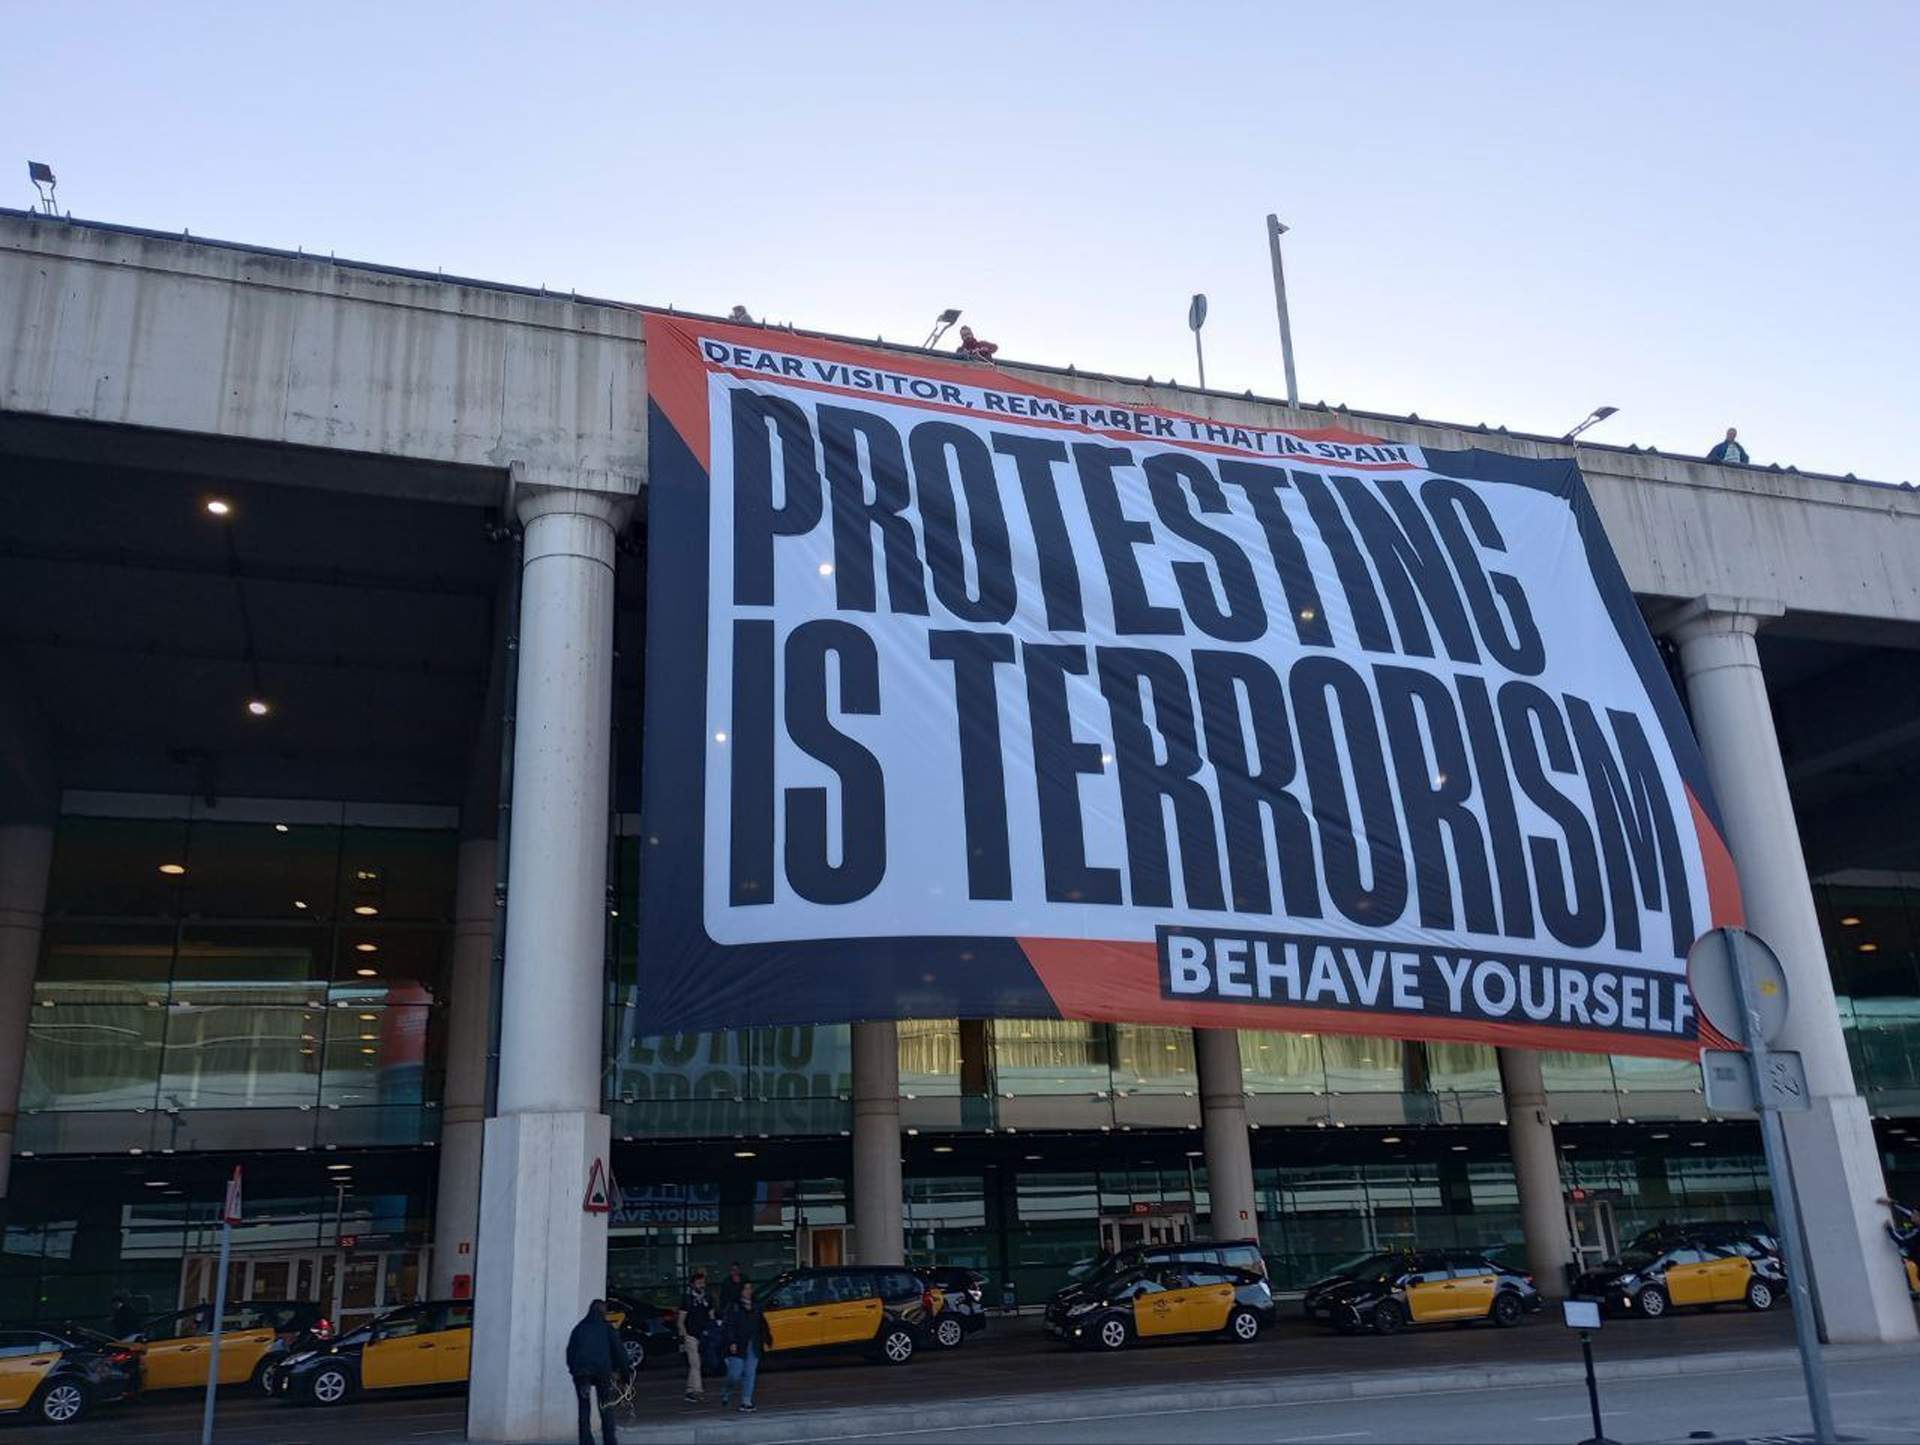 Pancarta gegant d'Òmnium a l'aeroport del Prat: "A Espanya, protestar és terrorisme"